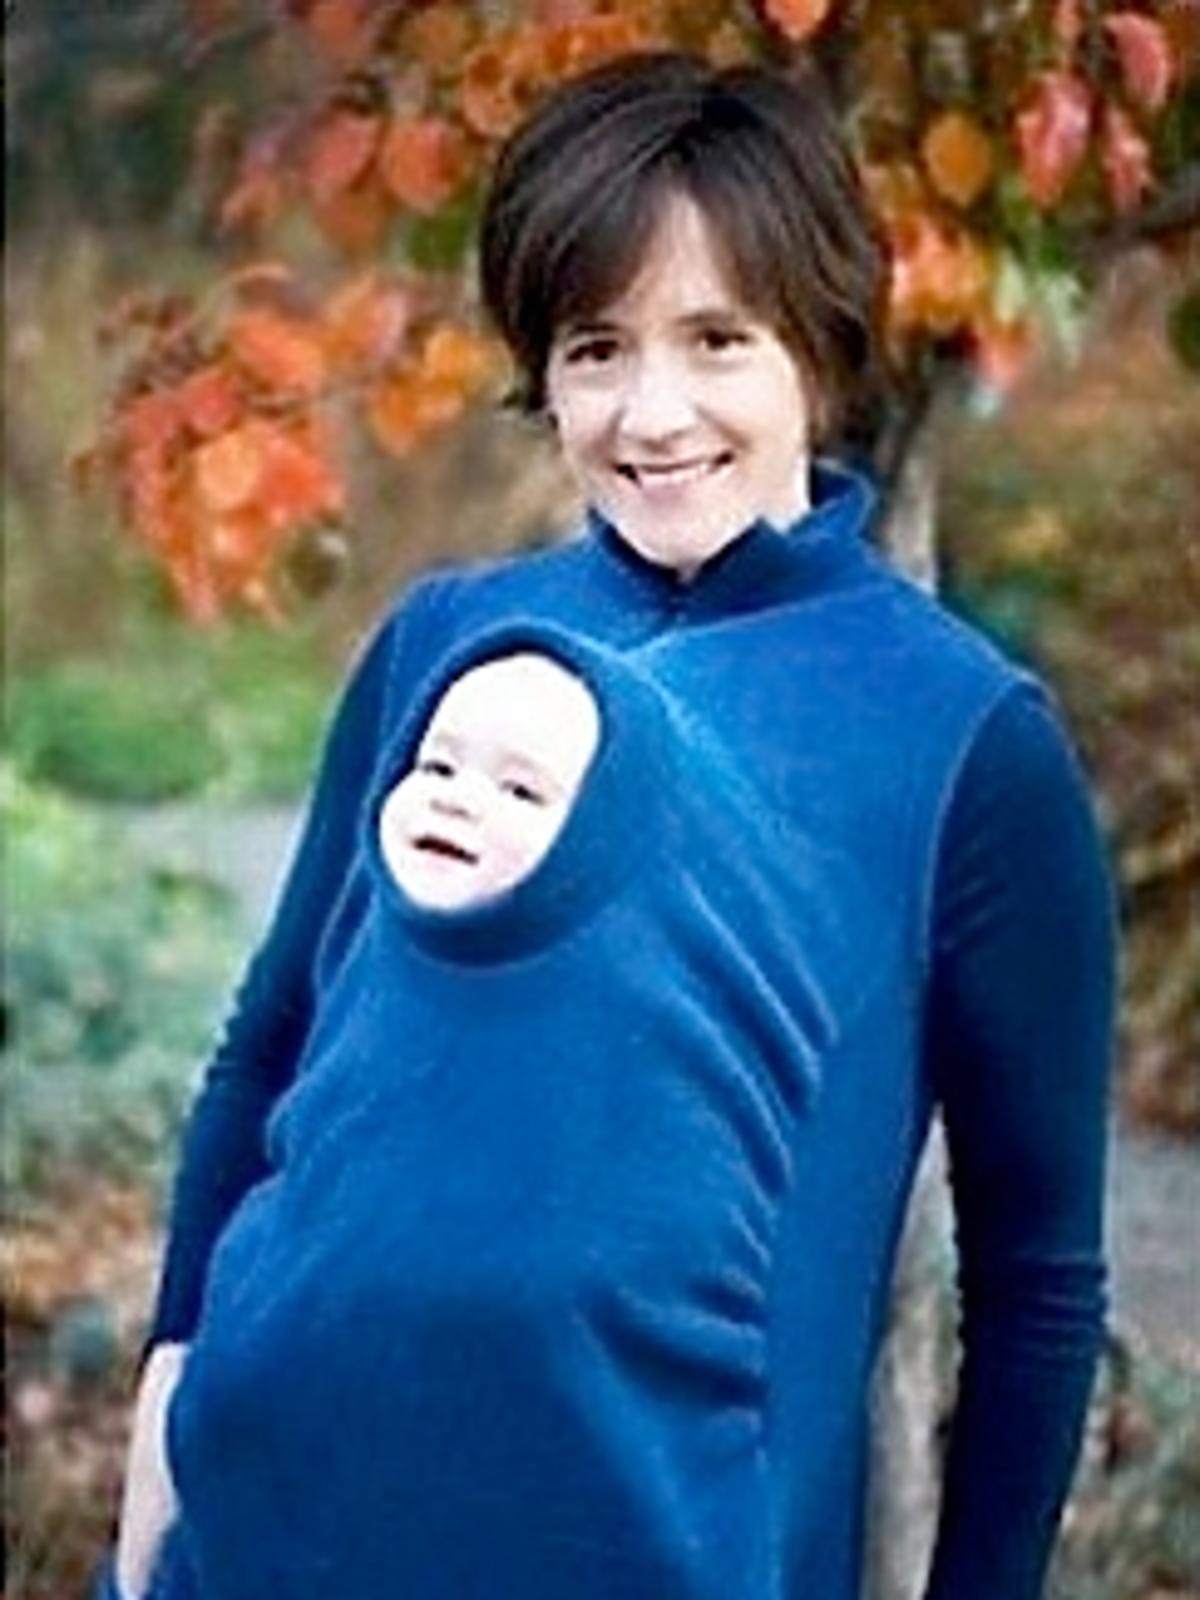 sweter z otworem na dziecko, nosidełko dla dziecka